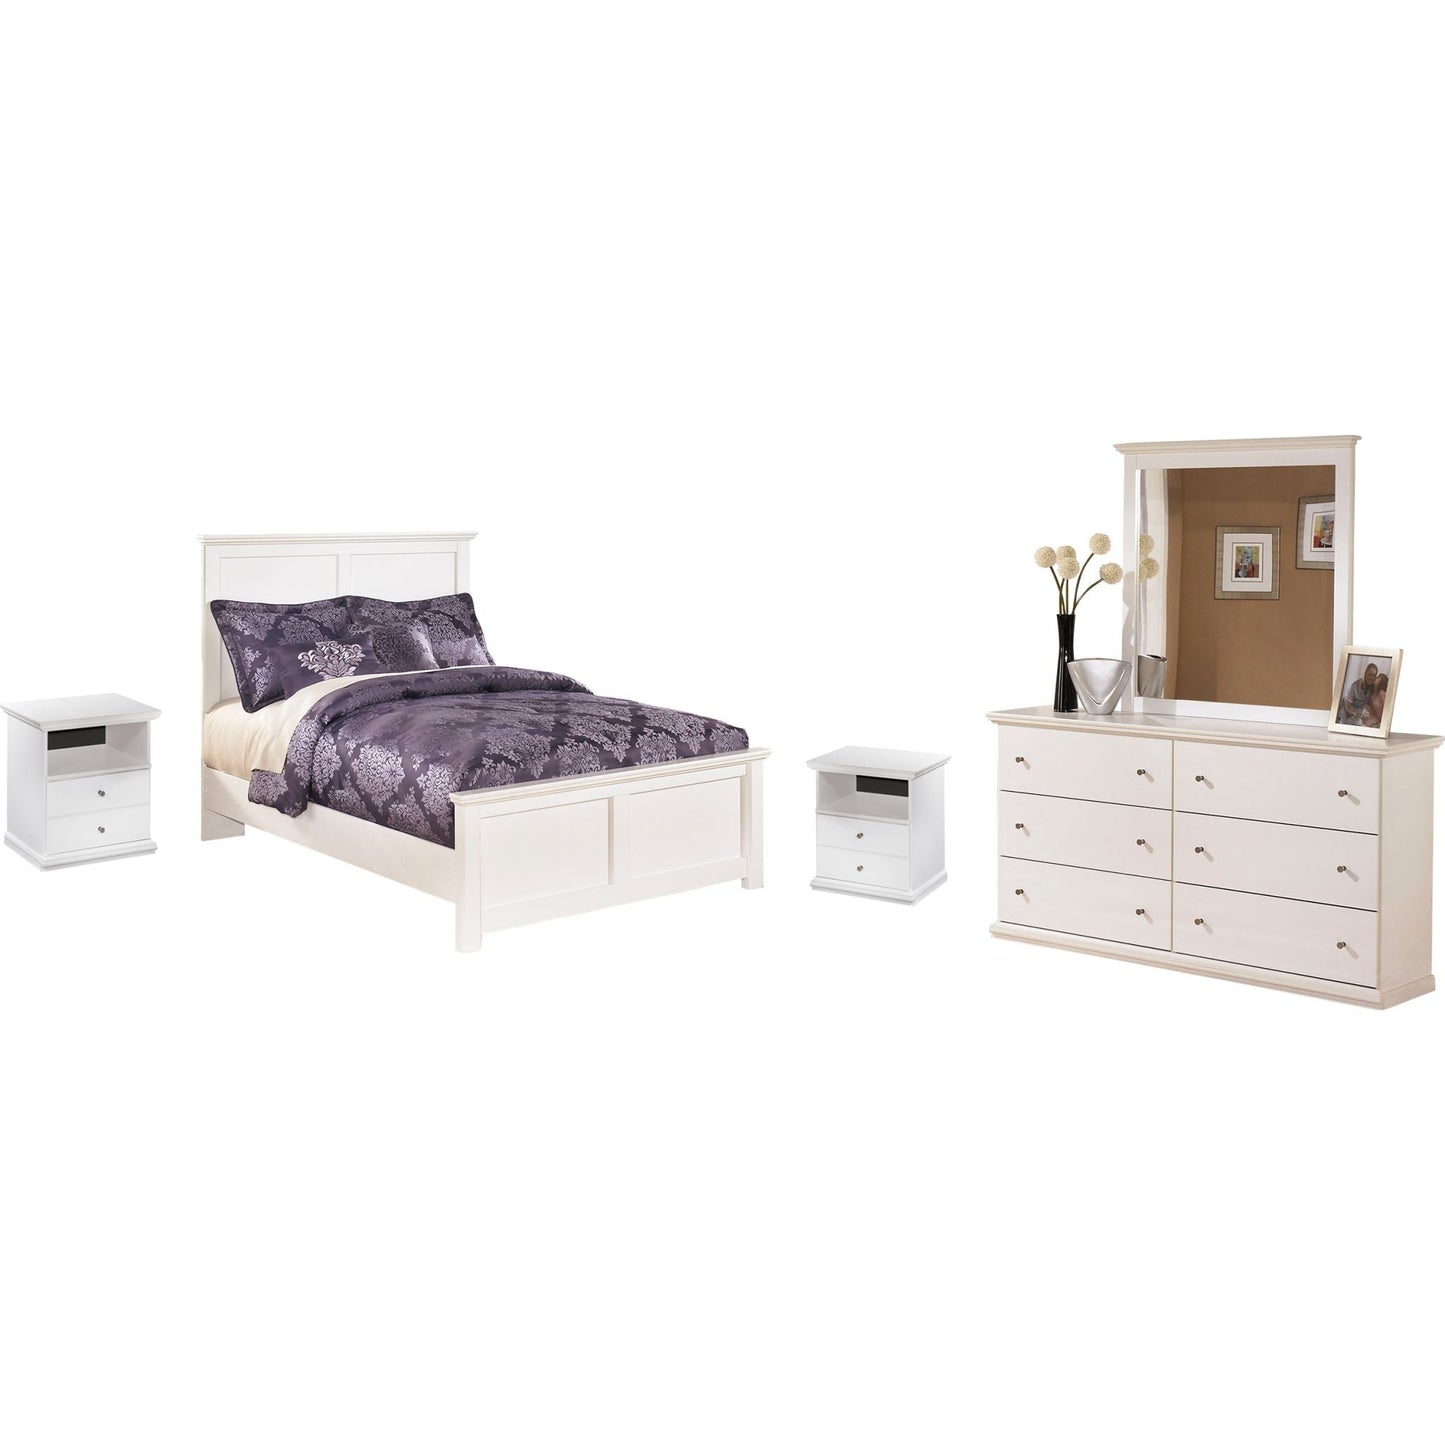 Bostwick Shoals 5 Piece Twin Bedroom - White